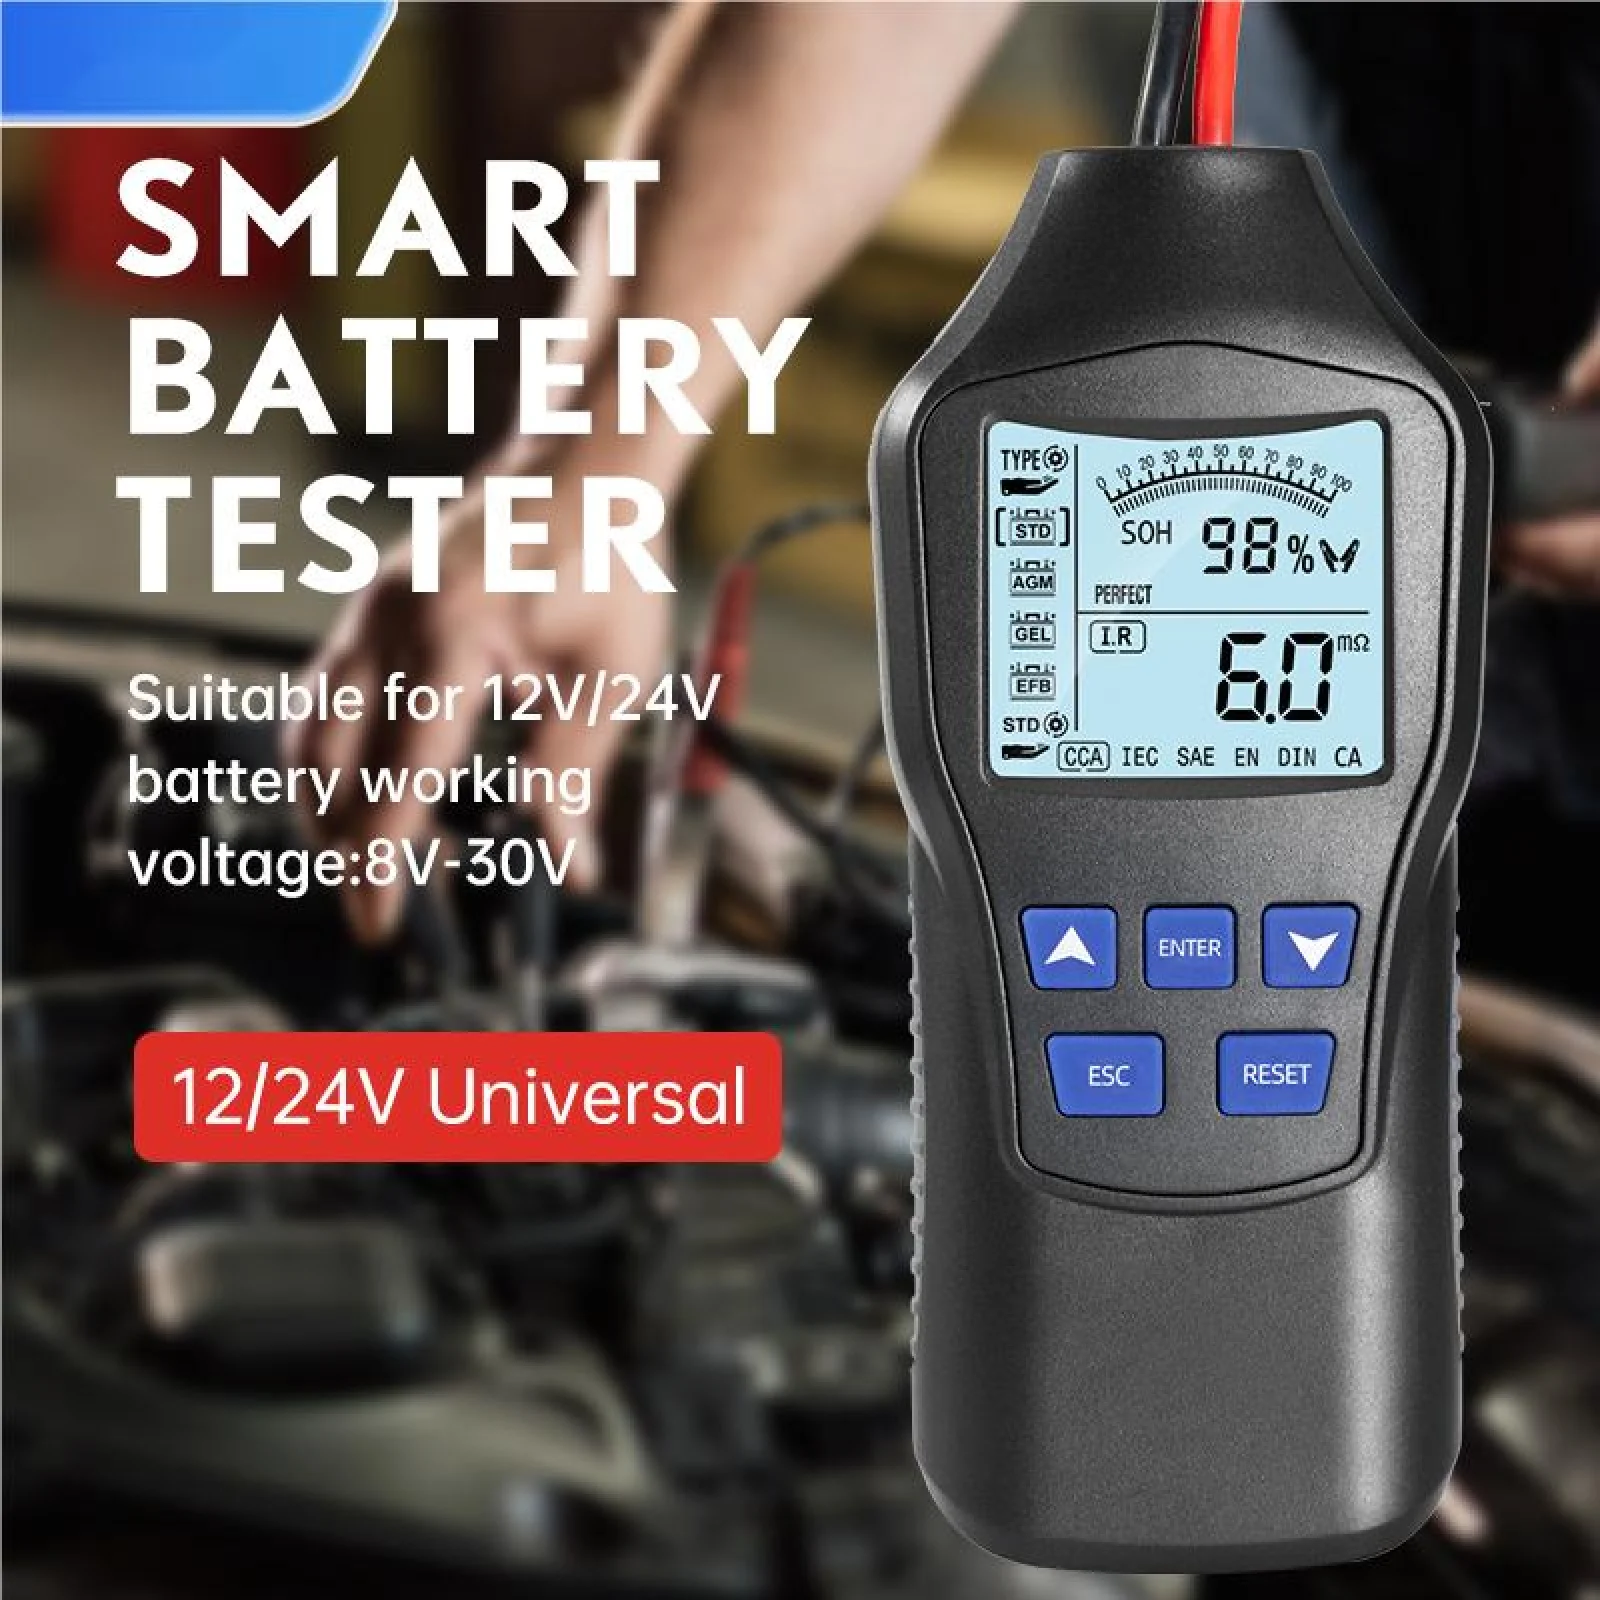 

12V/24V Universal Car Battery Internal Resistance Tester Digital Display Smart Battery Tester for Lead-acid Battery Test